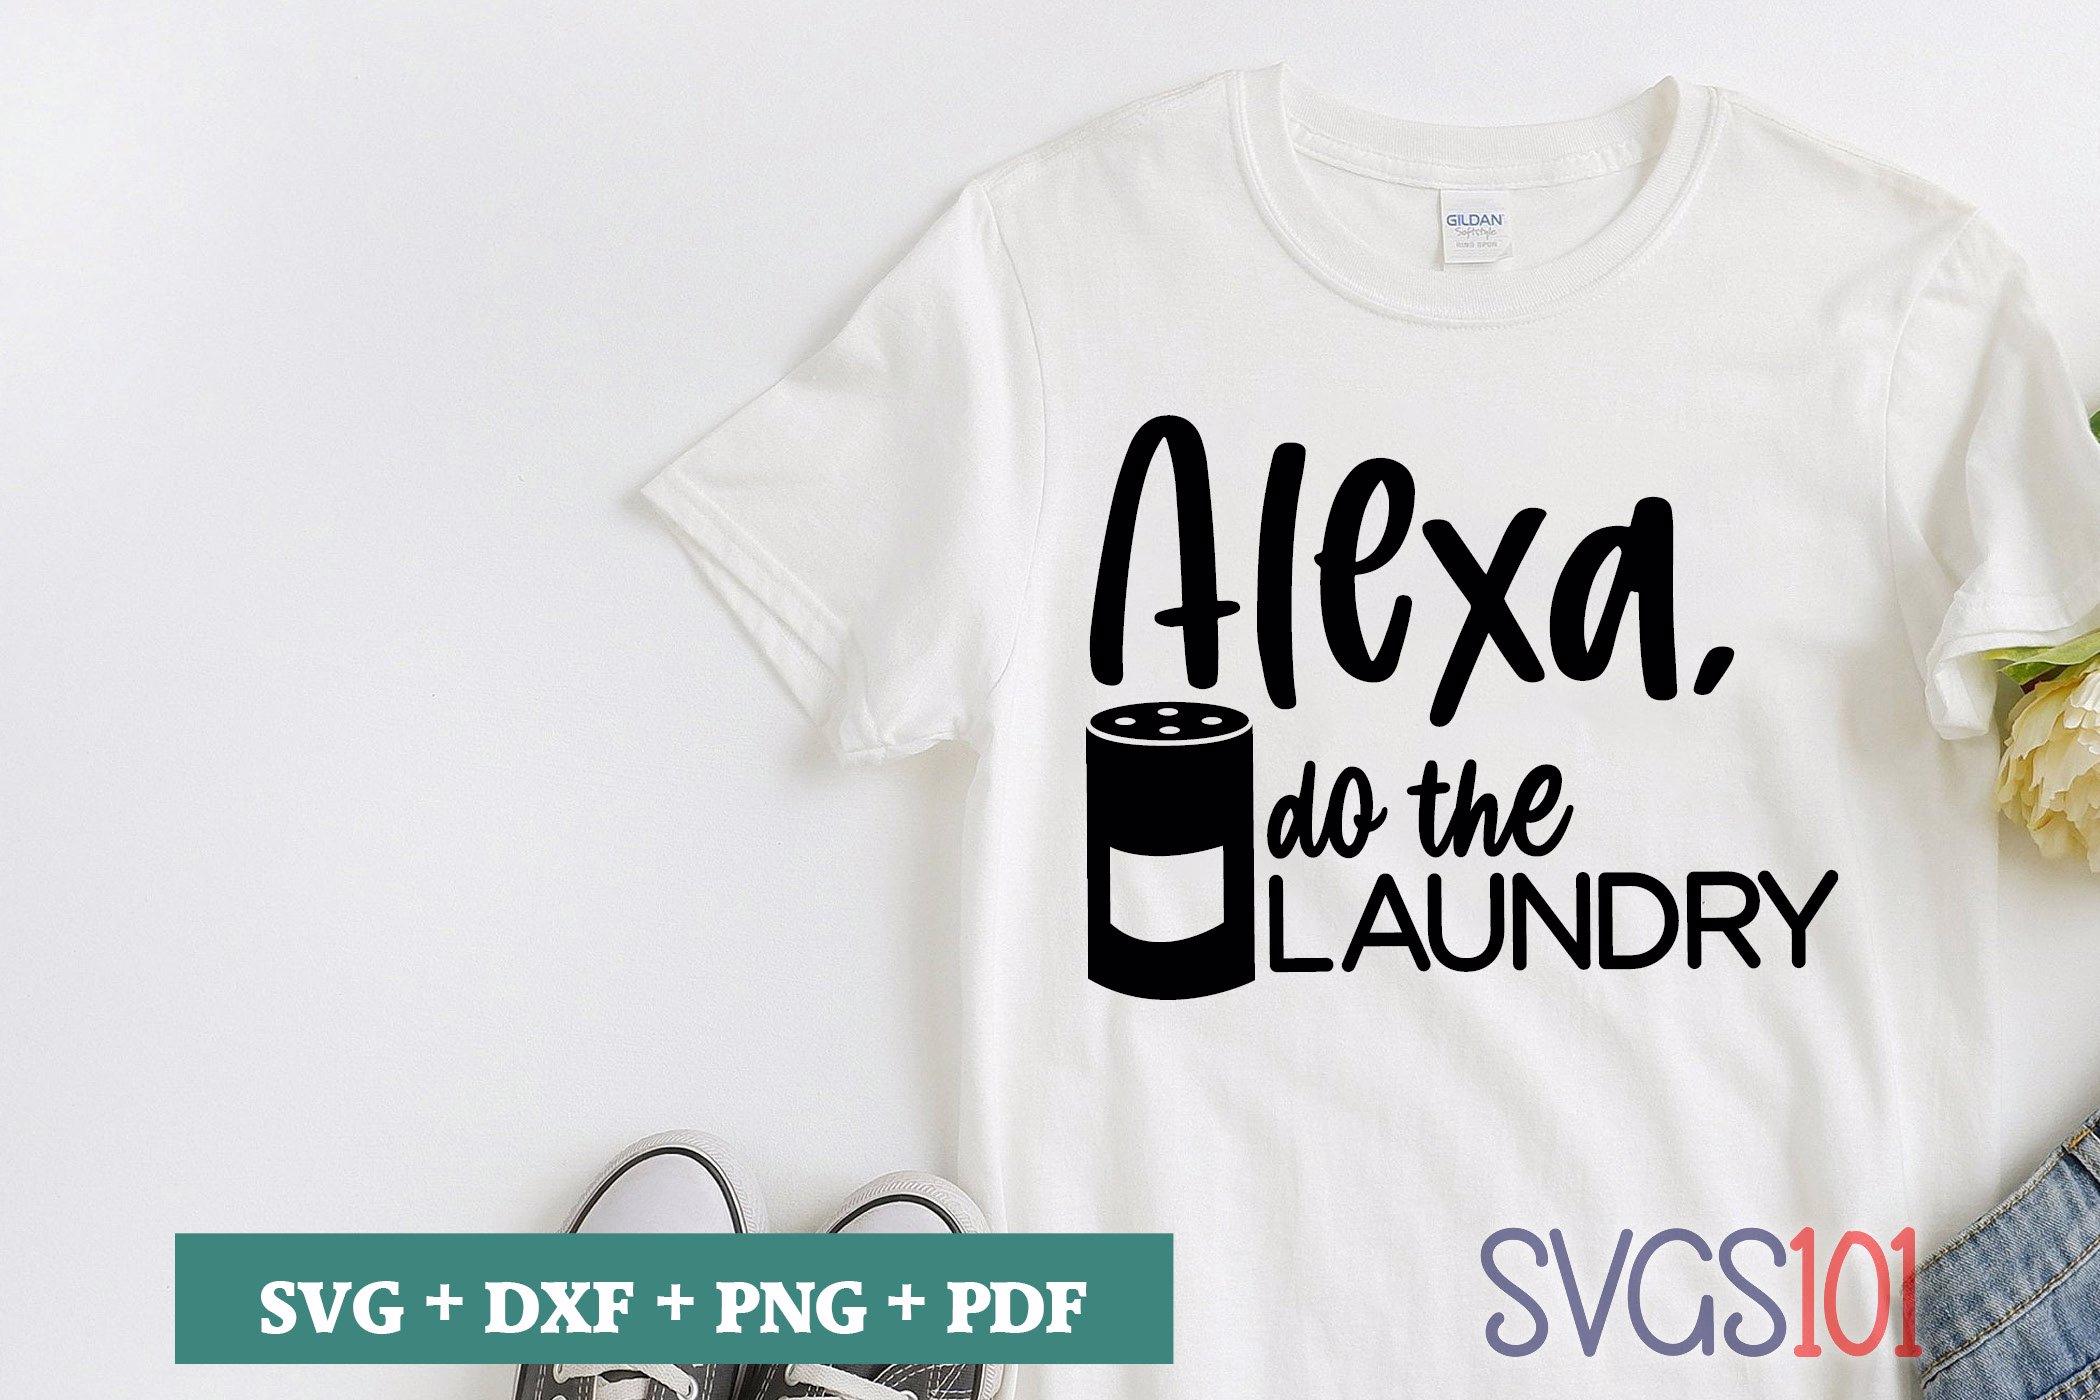 Alexa, Do The Laundry